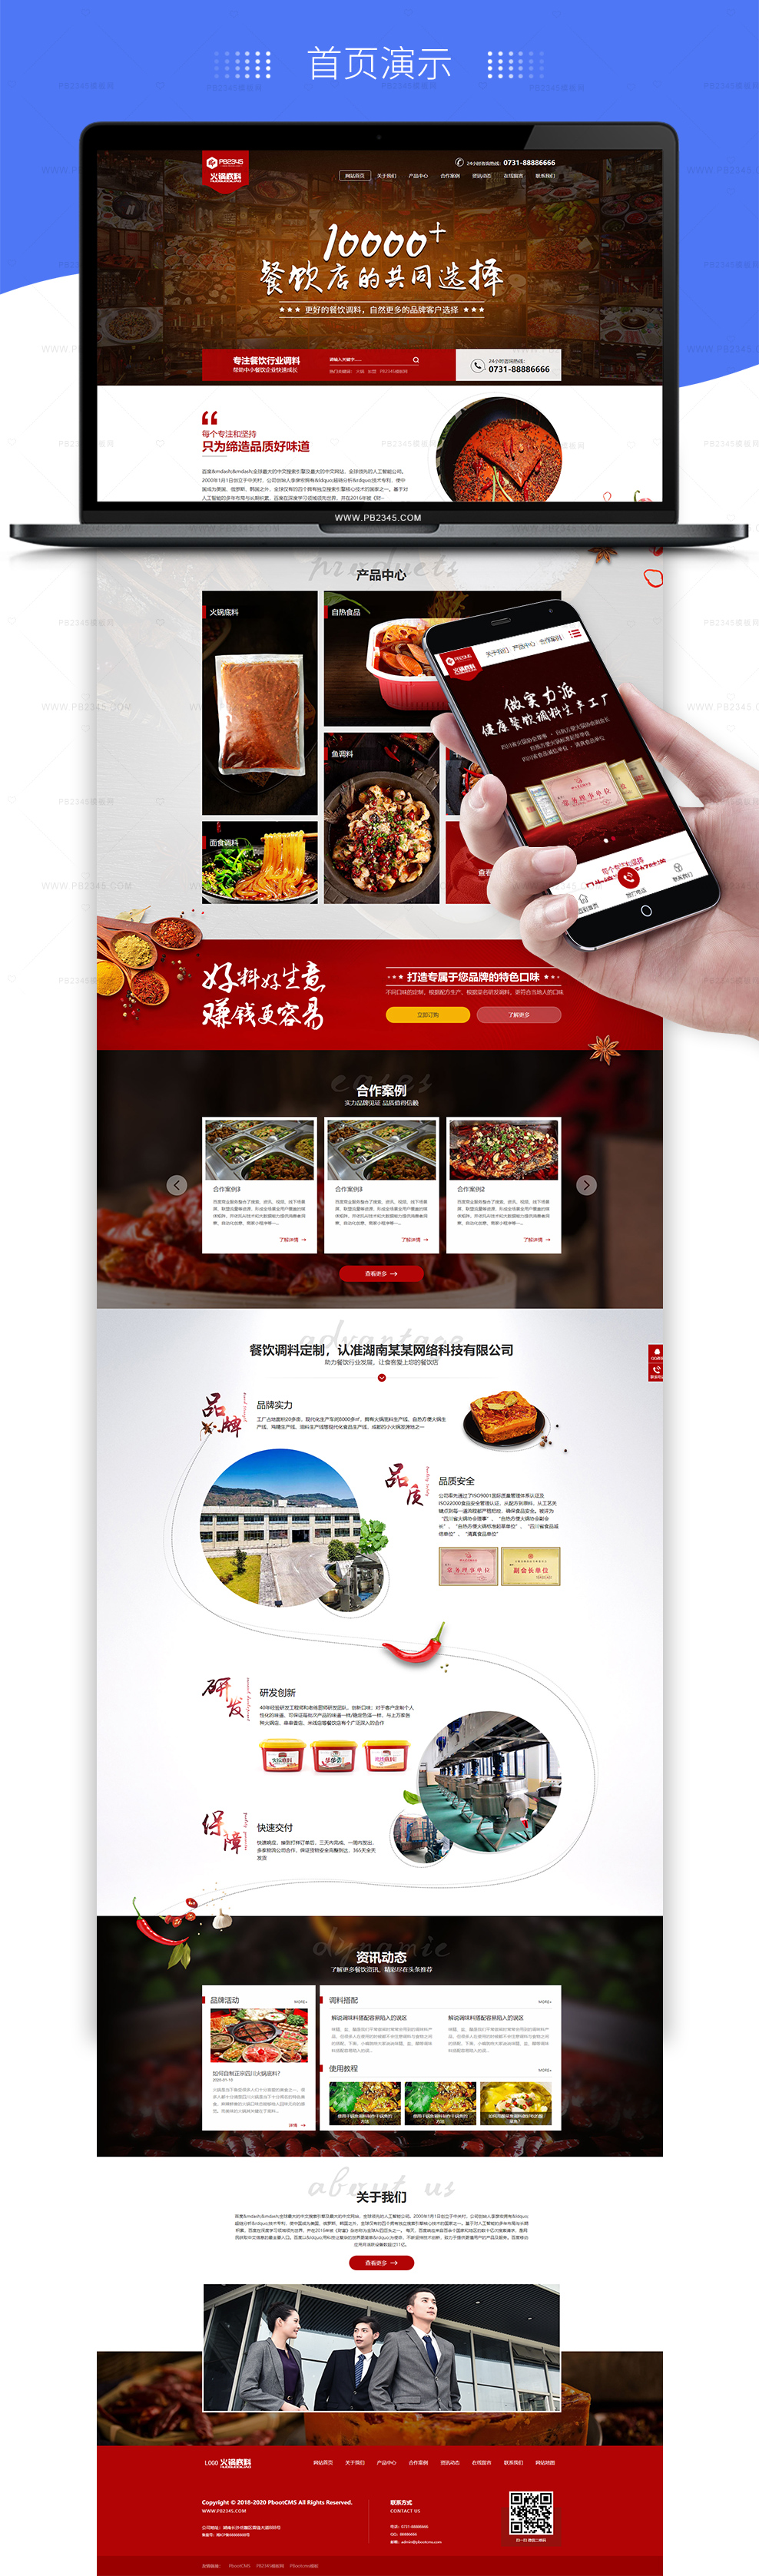 PBOOTCMS高端火锅底料餐饮调料食品营销型网站模板(带手机端)